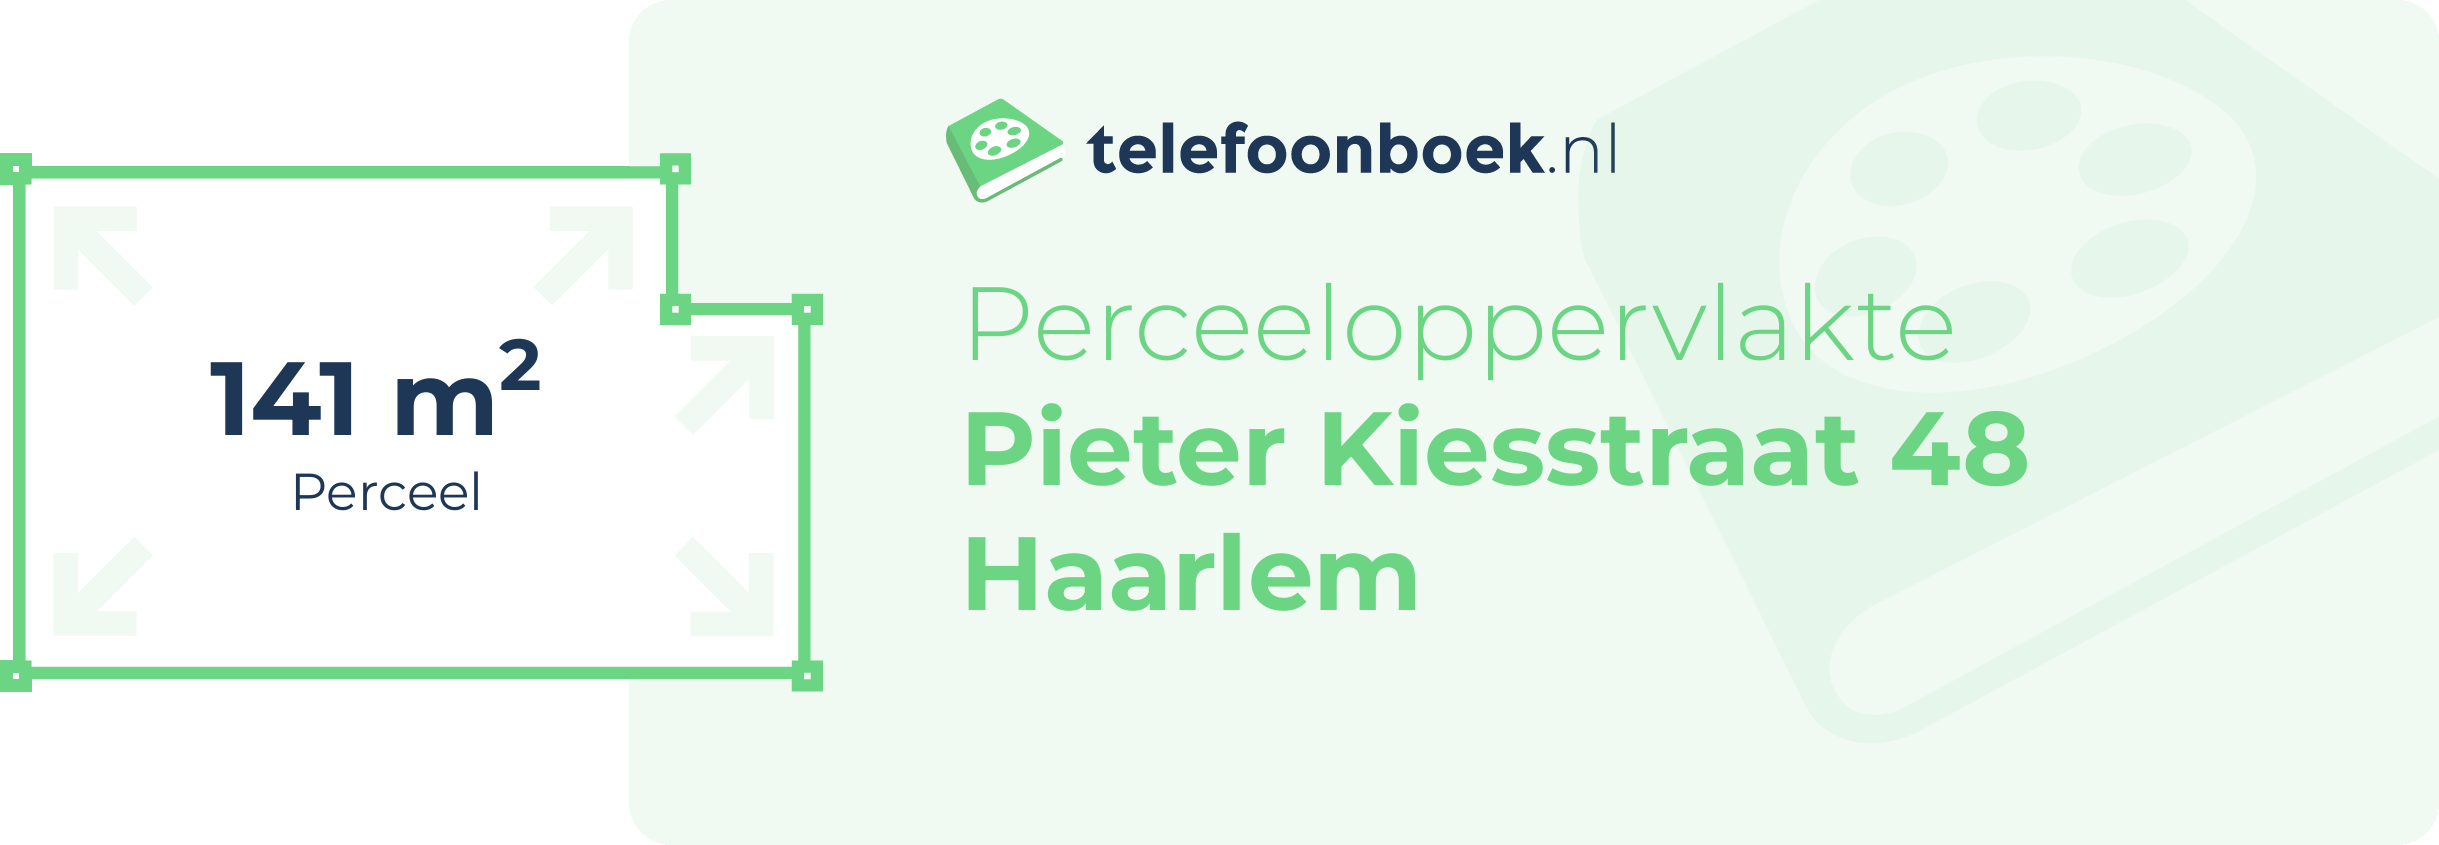 Perceeloppervlakte Pieter Kiesstraat 48 Haarlem